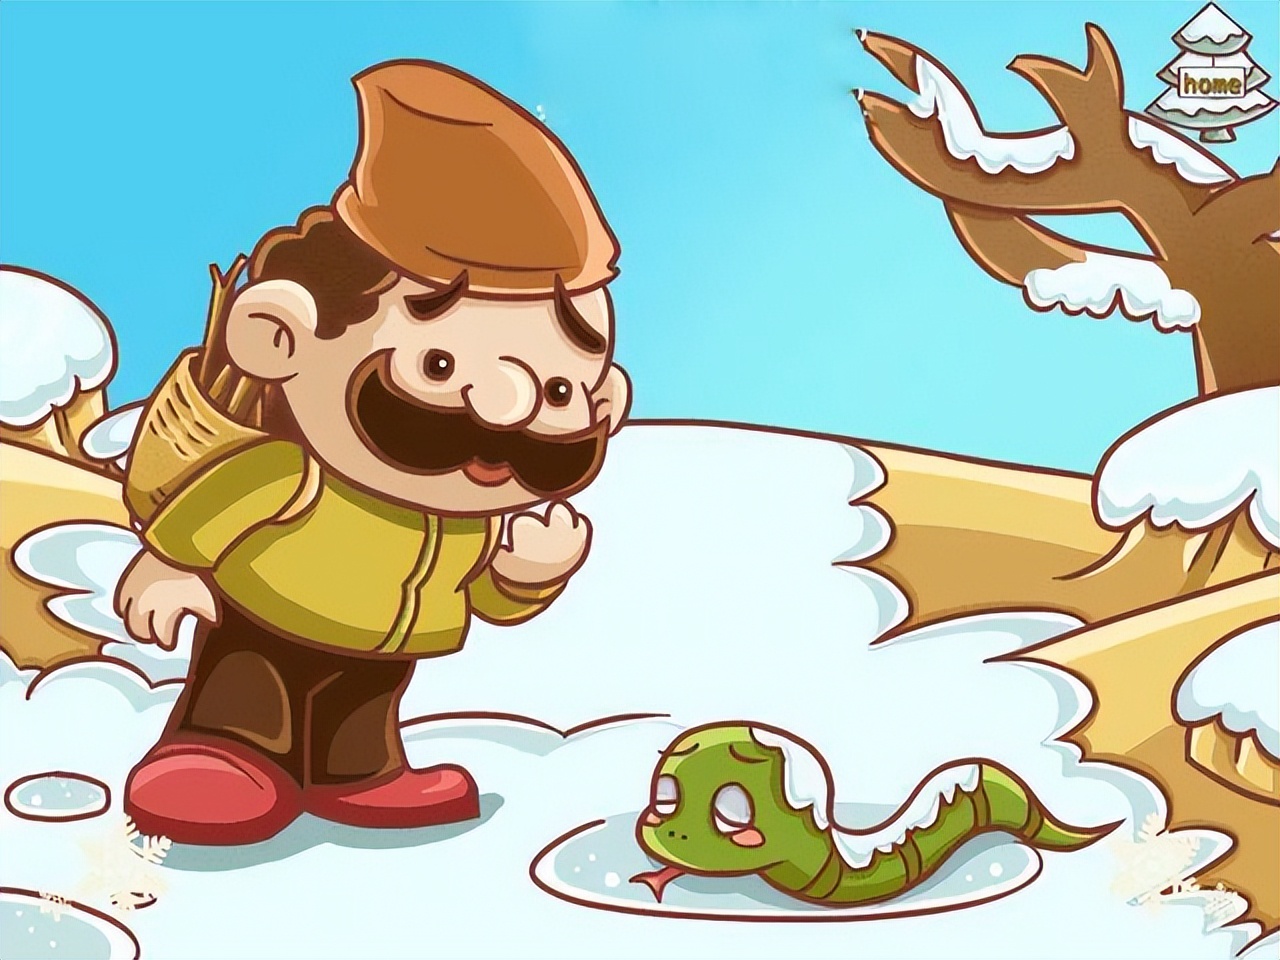 冬眠的蛇图片卡通图片